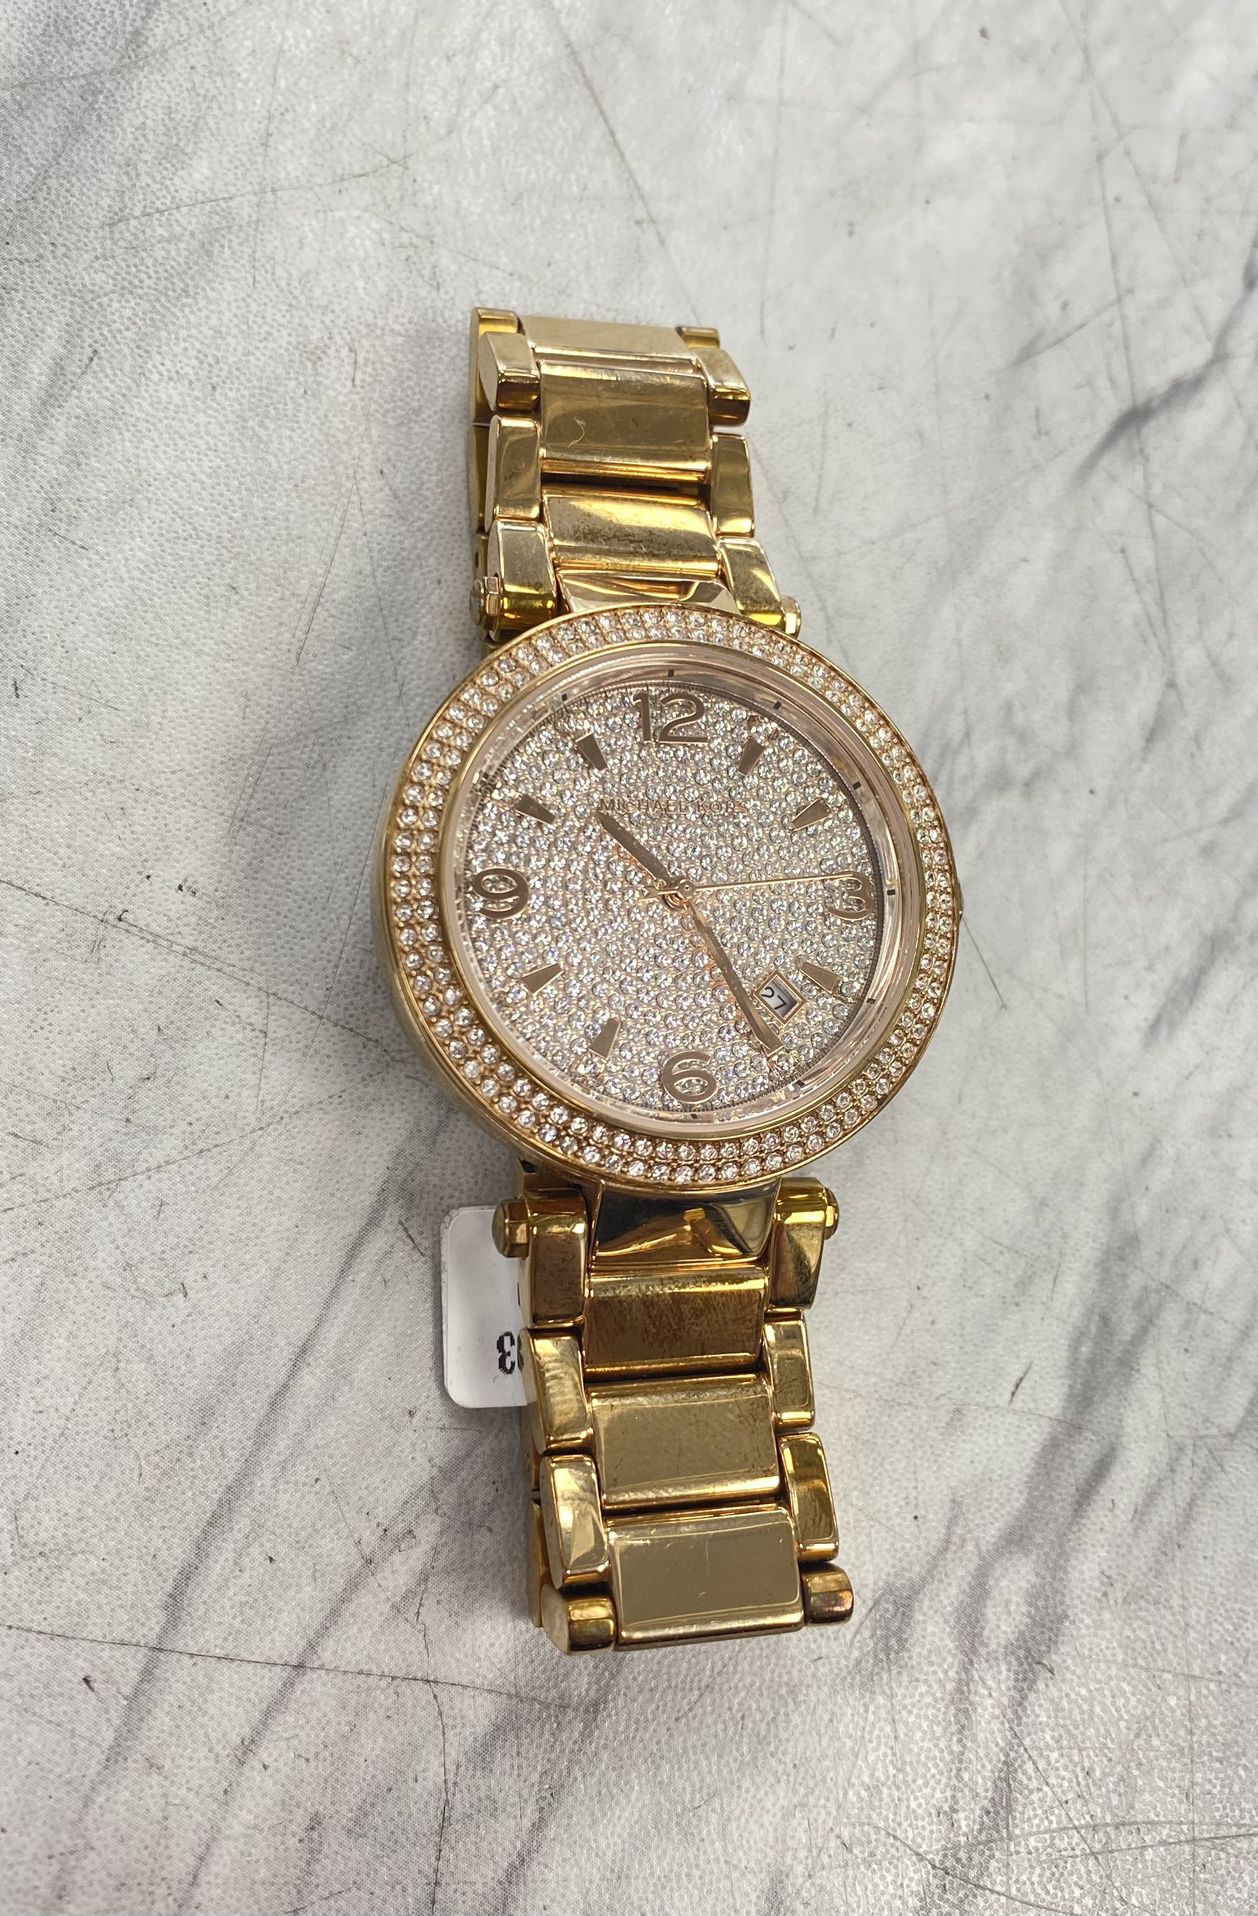 Michael Kors MK-6511 “Parker” Wrist Watch